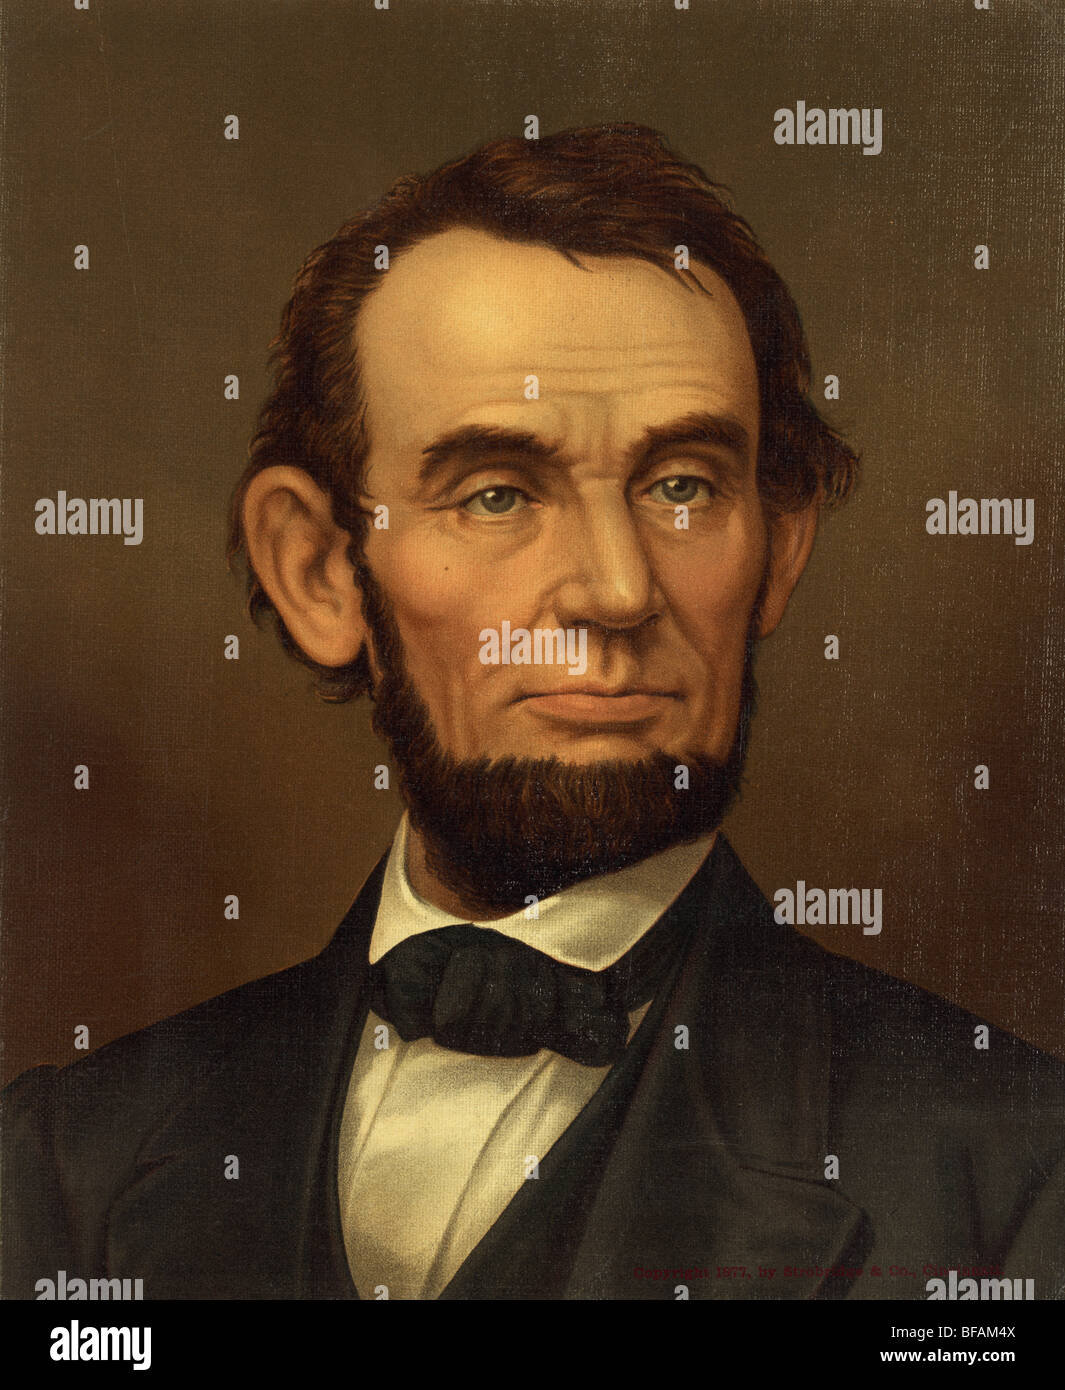 Ritratto c1877 di Abraham Lincoln - Lincoln (1809 - 1865) era il sedicesimo presidente degli Stati Uniti (1861 - 1865) e prima di essere assassinato. Foto Stock